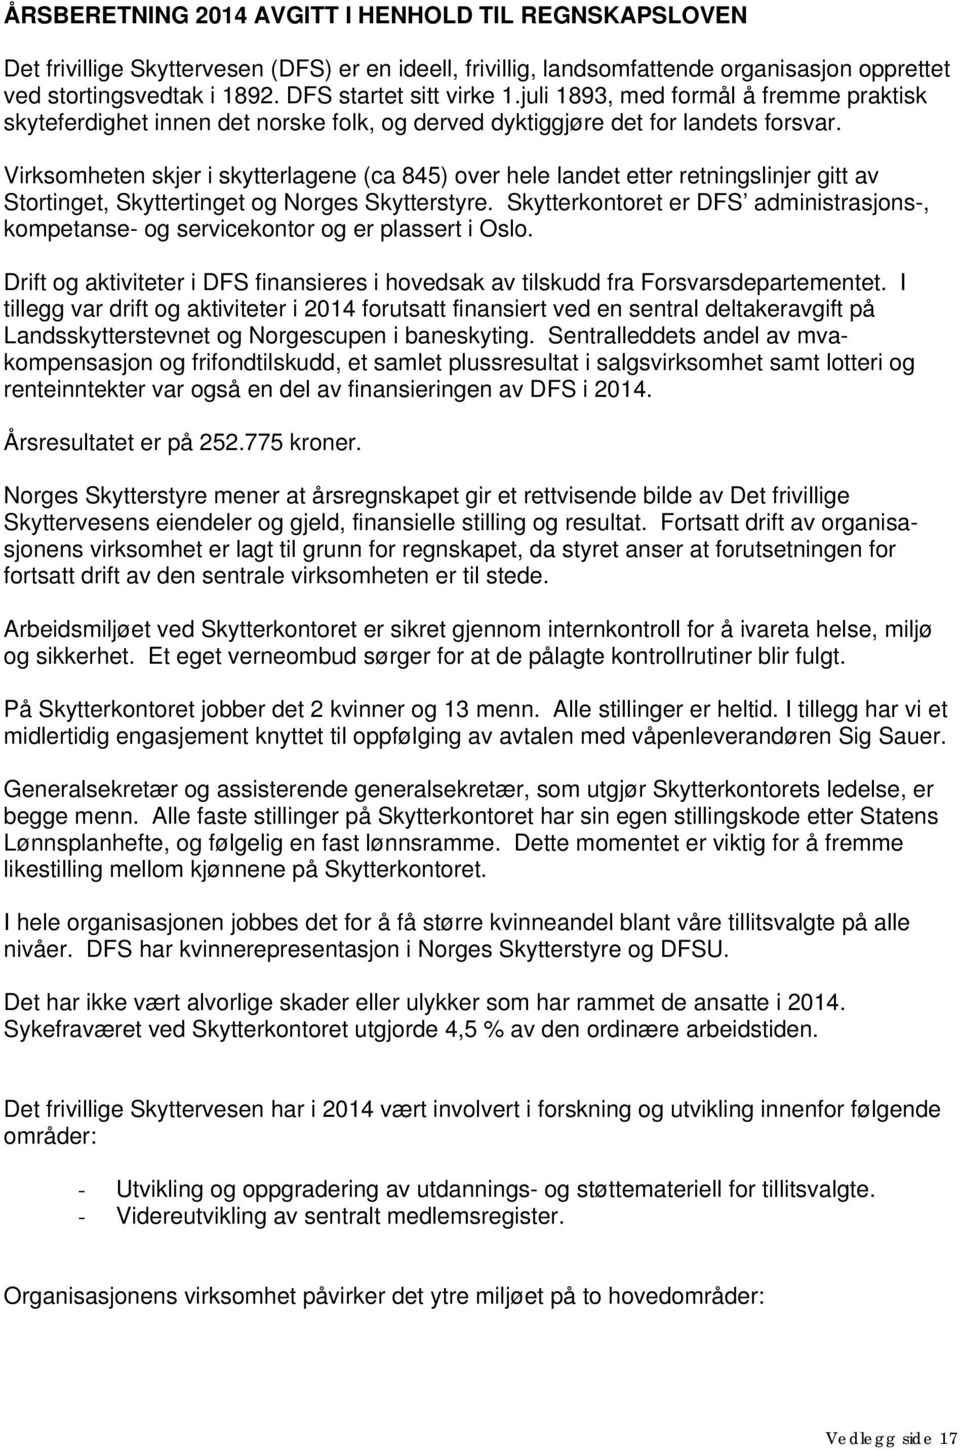 Virksomheten skjer i skytterlagene (ca 845) over hele landet etter retningslinjer gitt av Stortinget, Skyttertinget og Norges Skytterstyre.